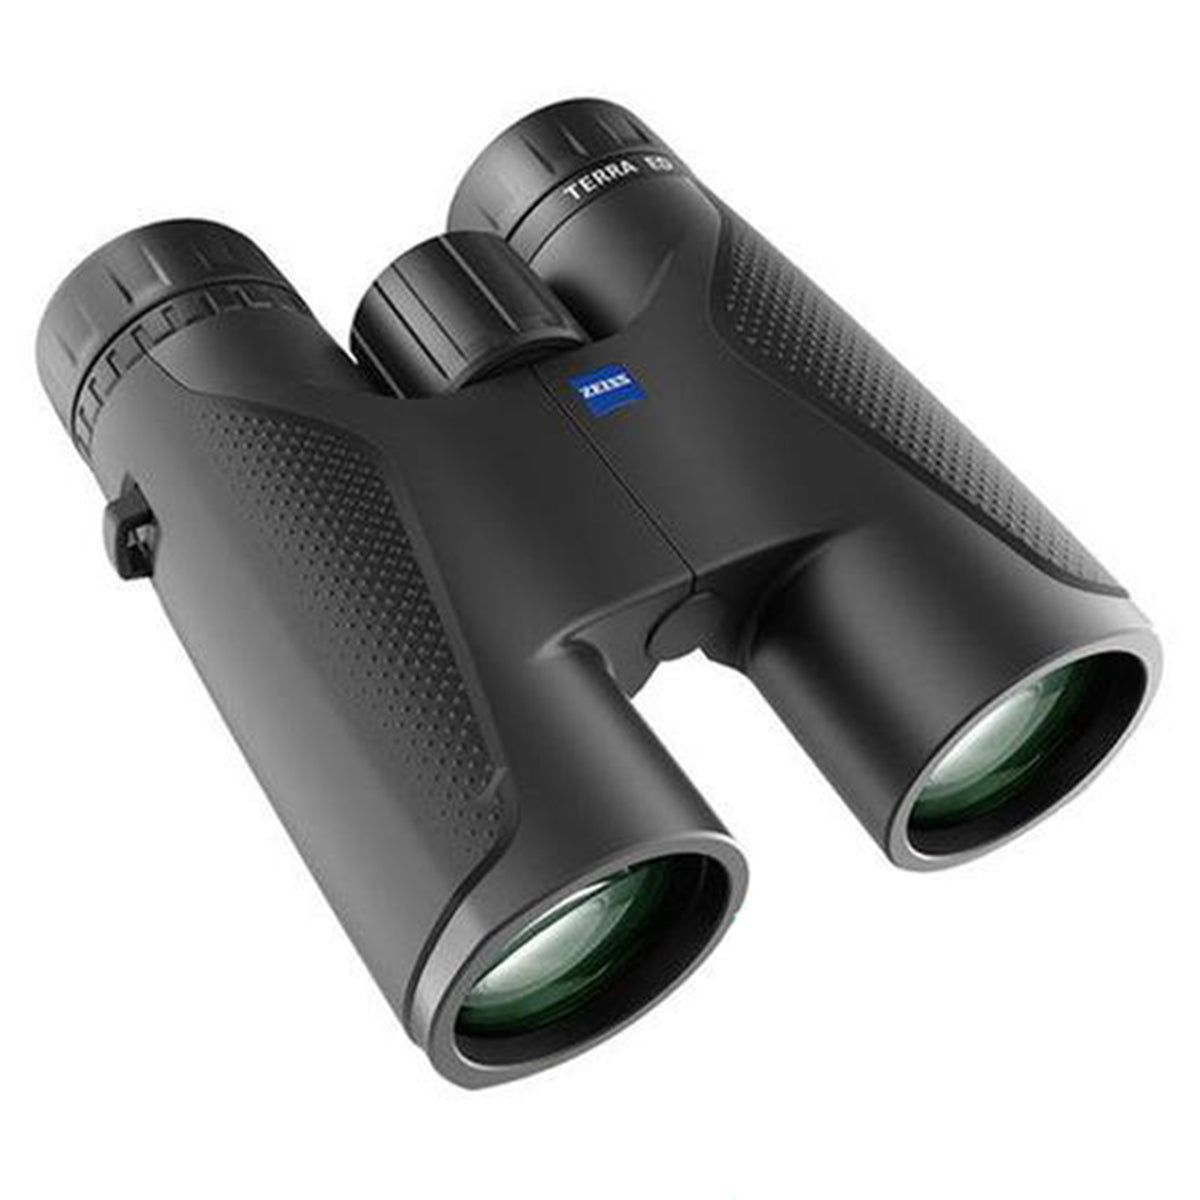 Zeiss Terra ED 10x42 Binocular by Zeiss | Optics - goHUNT Shop